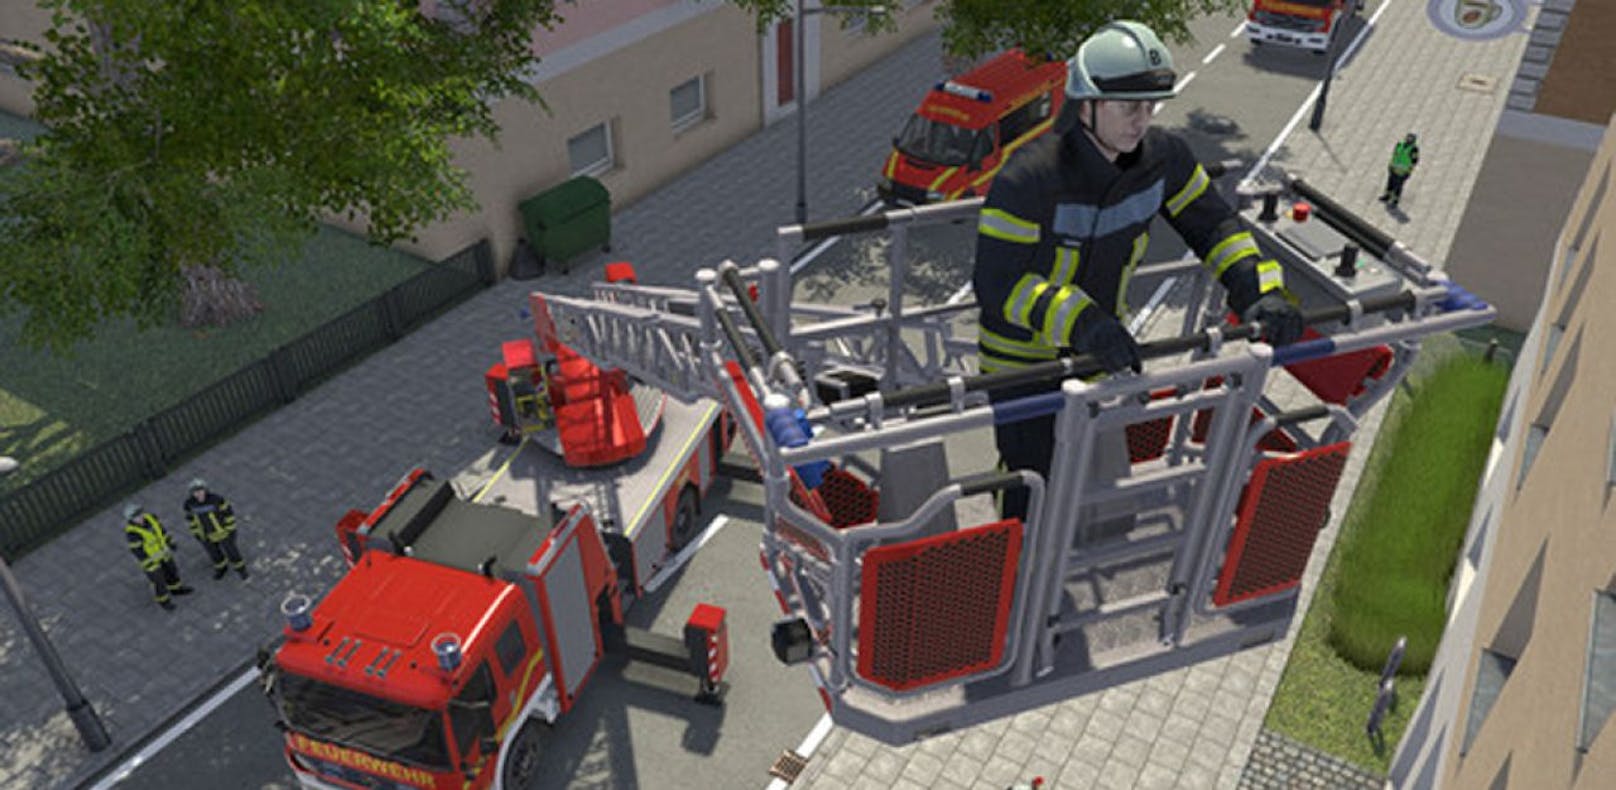 Notruf 112 - Die Feuerwehr Simulation im Test